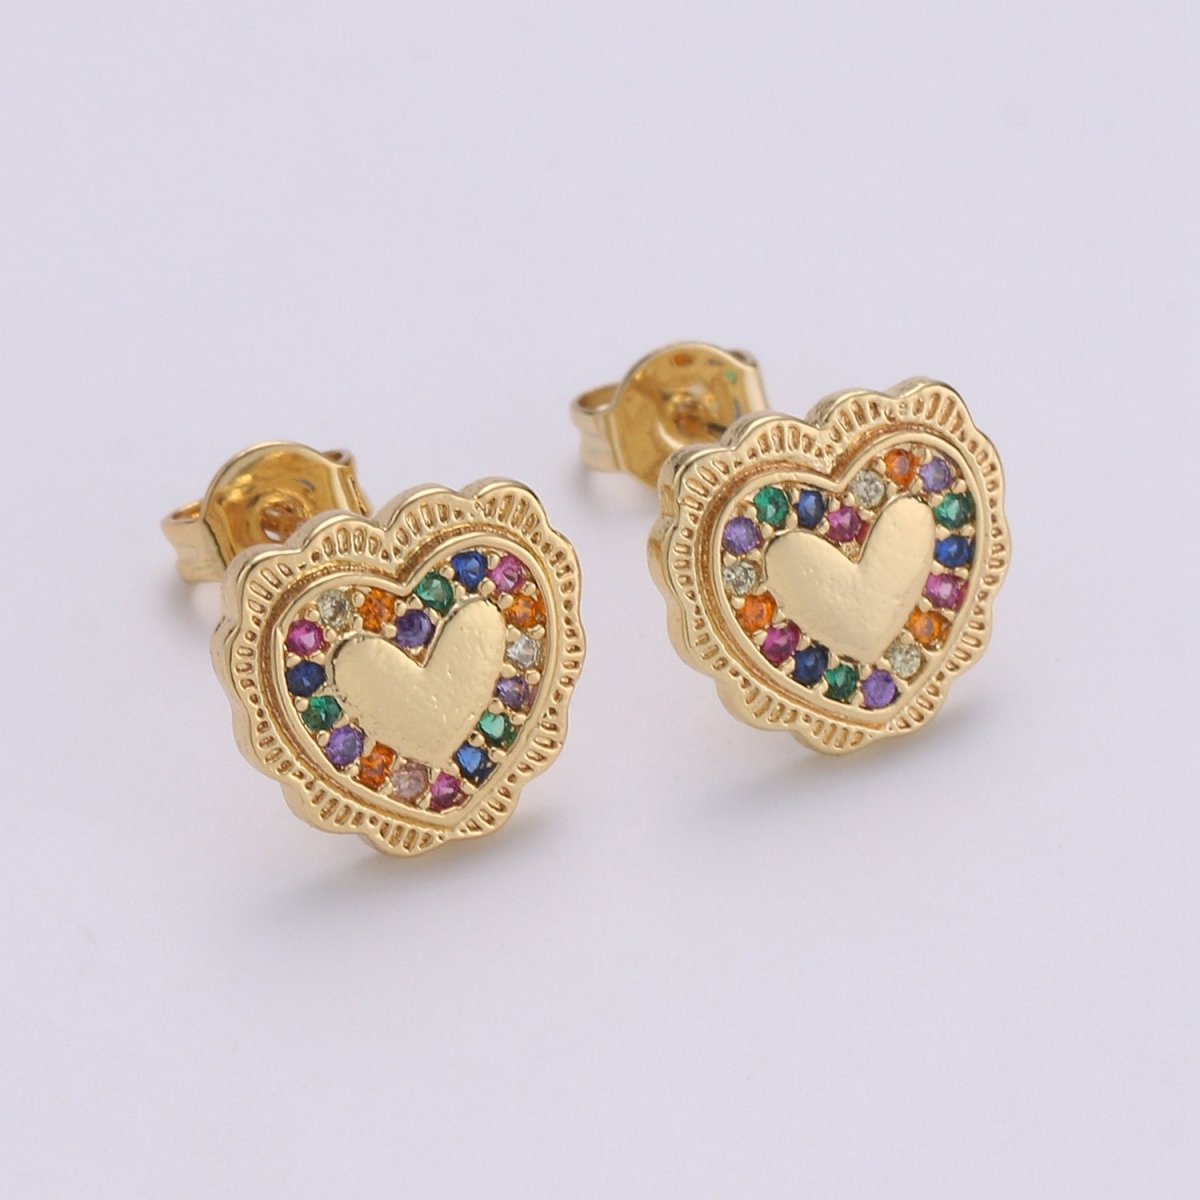 Heart Stud Earrings • Heart Earrings • Heart Jewelry • Dainty Gold Heart Earrings • Stud Earrings • Gift for Her • Cute Earrings Q-263 - DLUXCA